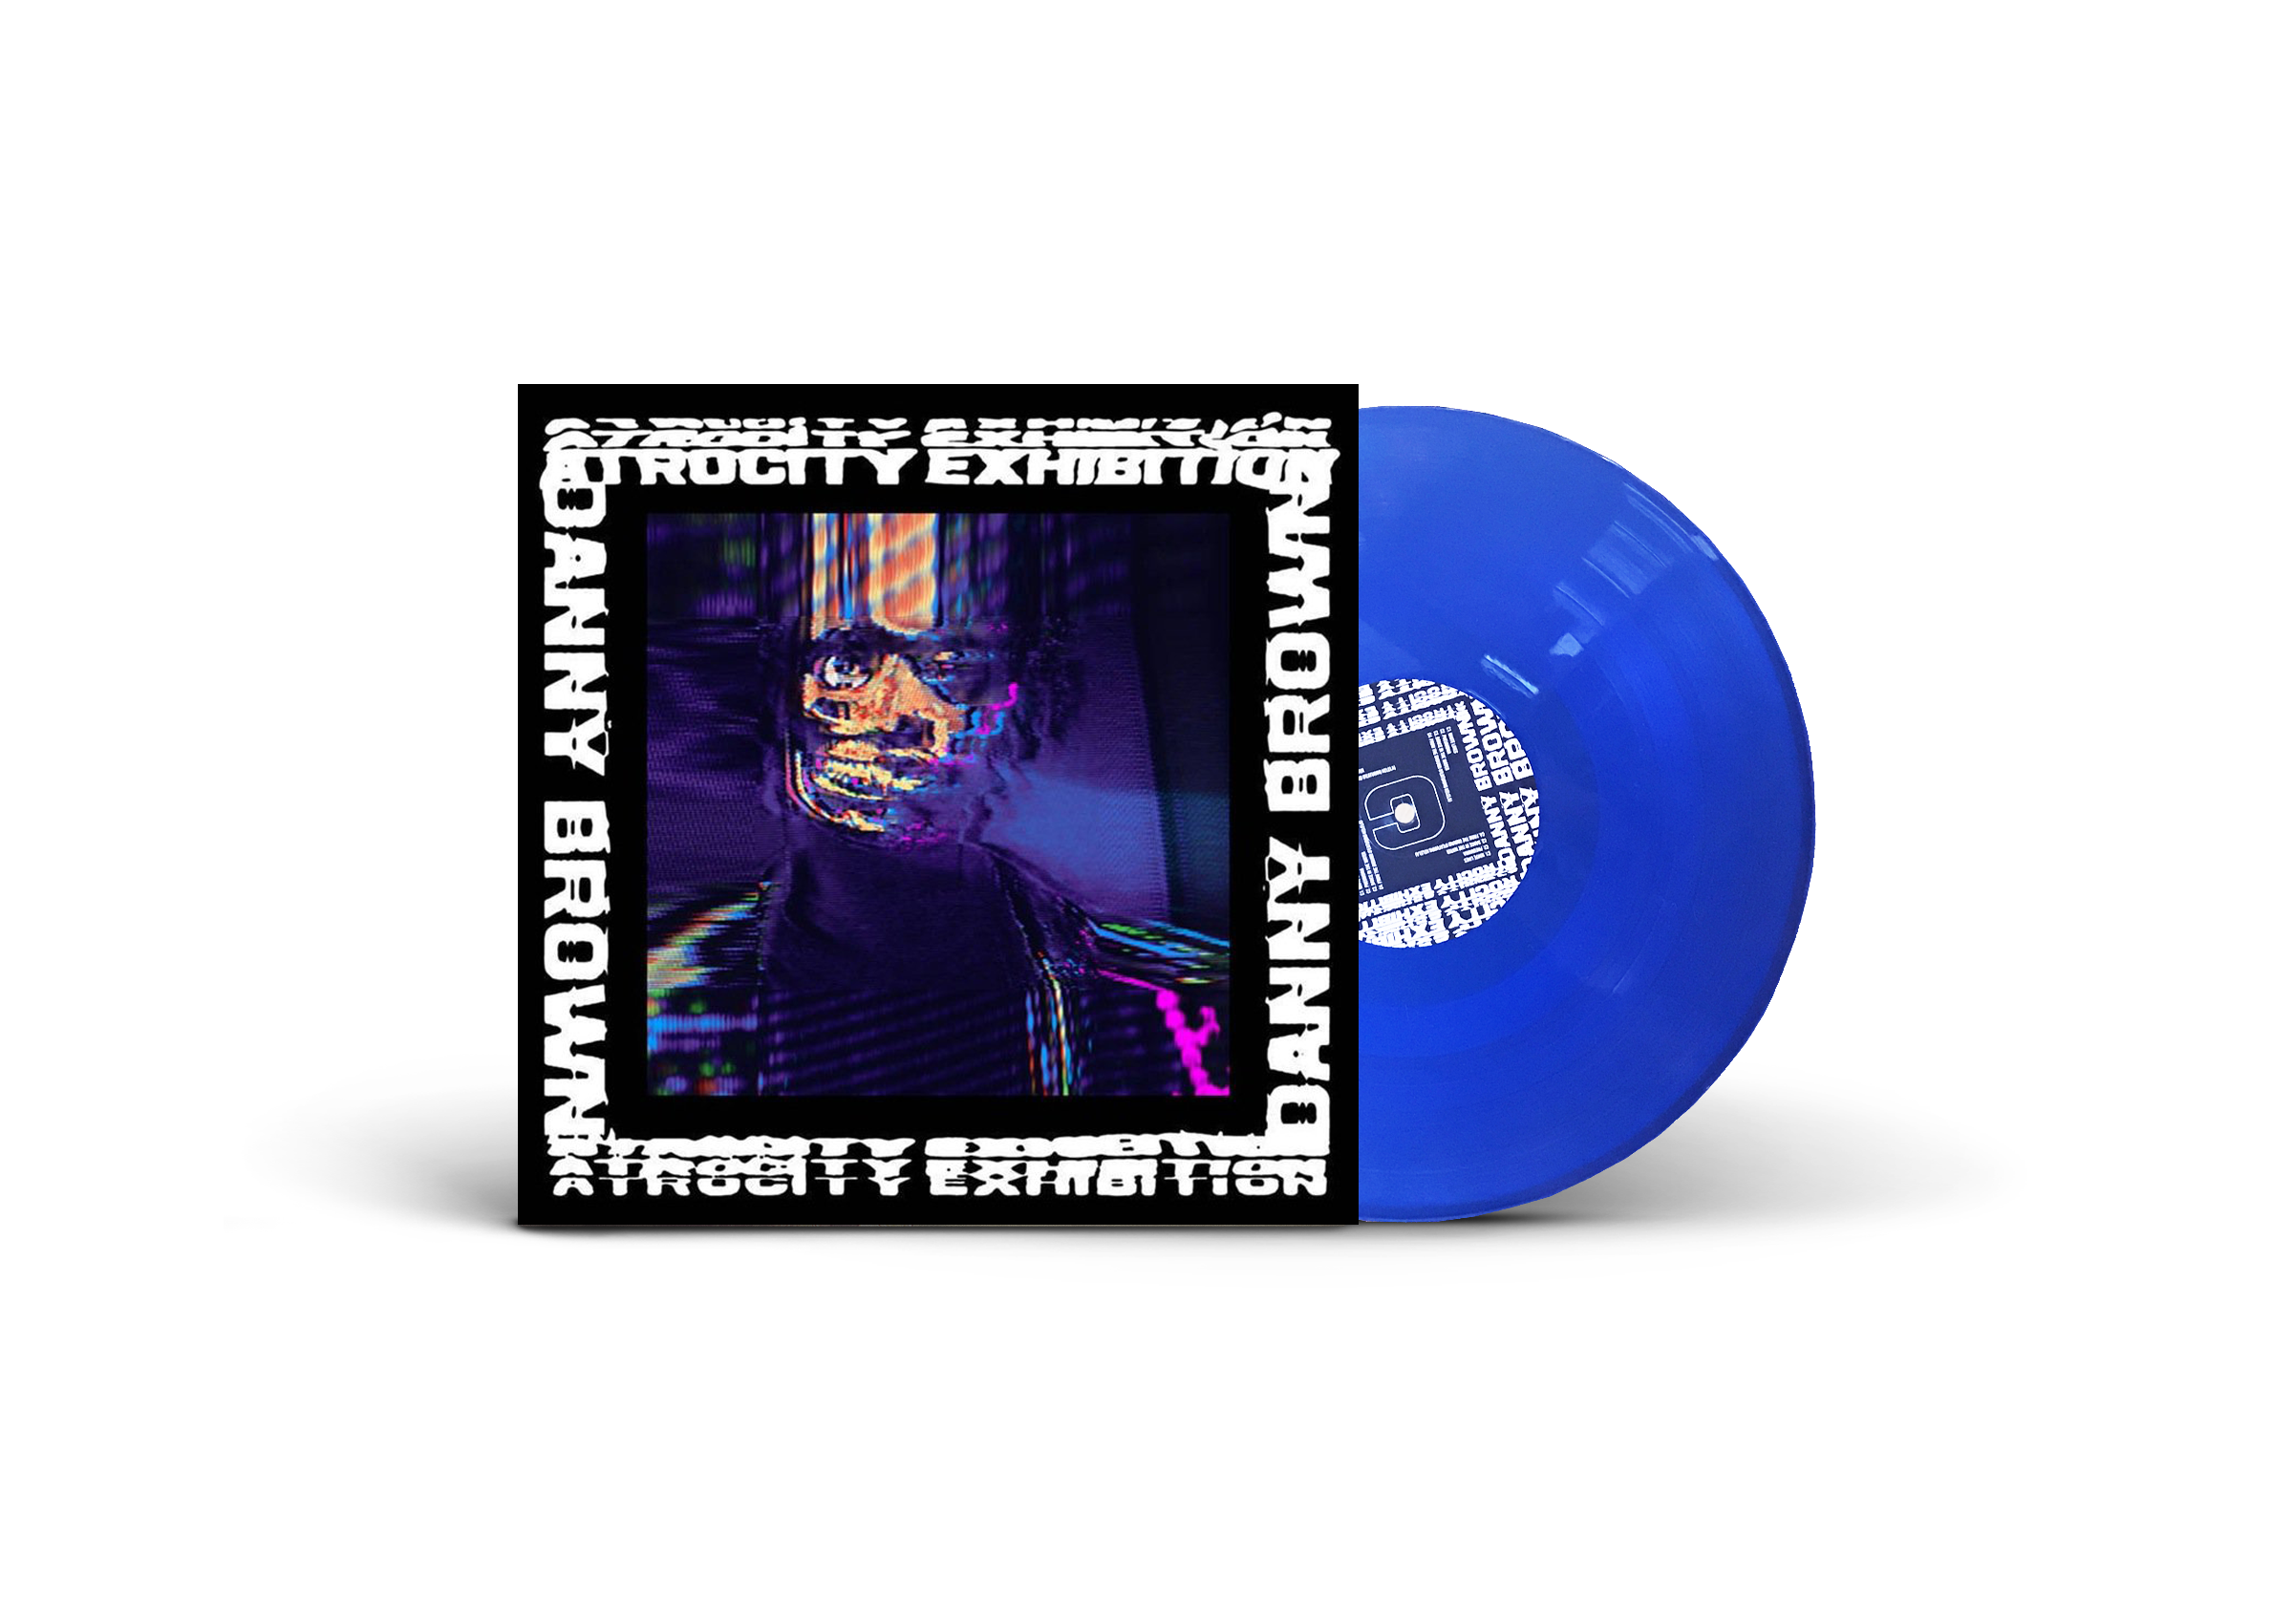 Danny Brown 'Atrocity Exhibition' (Electric Blue Vinyl)